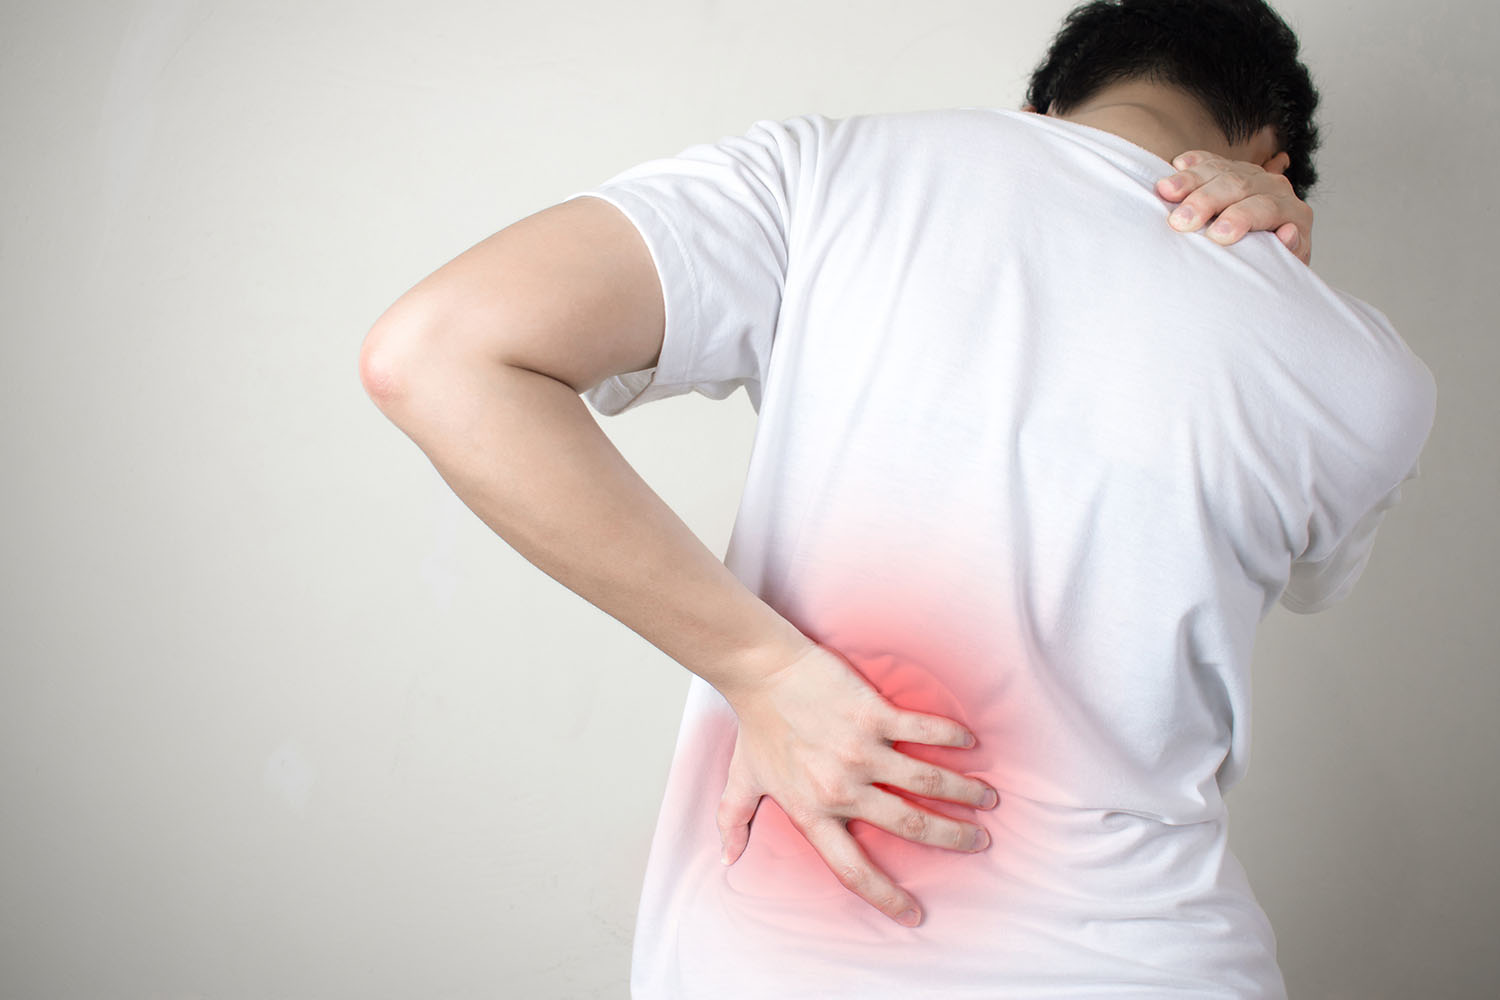 Причины поясничной боли и дискомфорта в спине